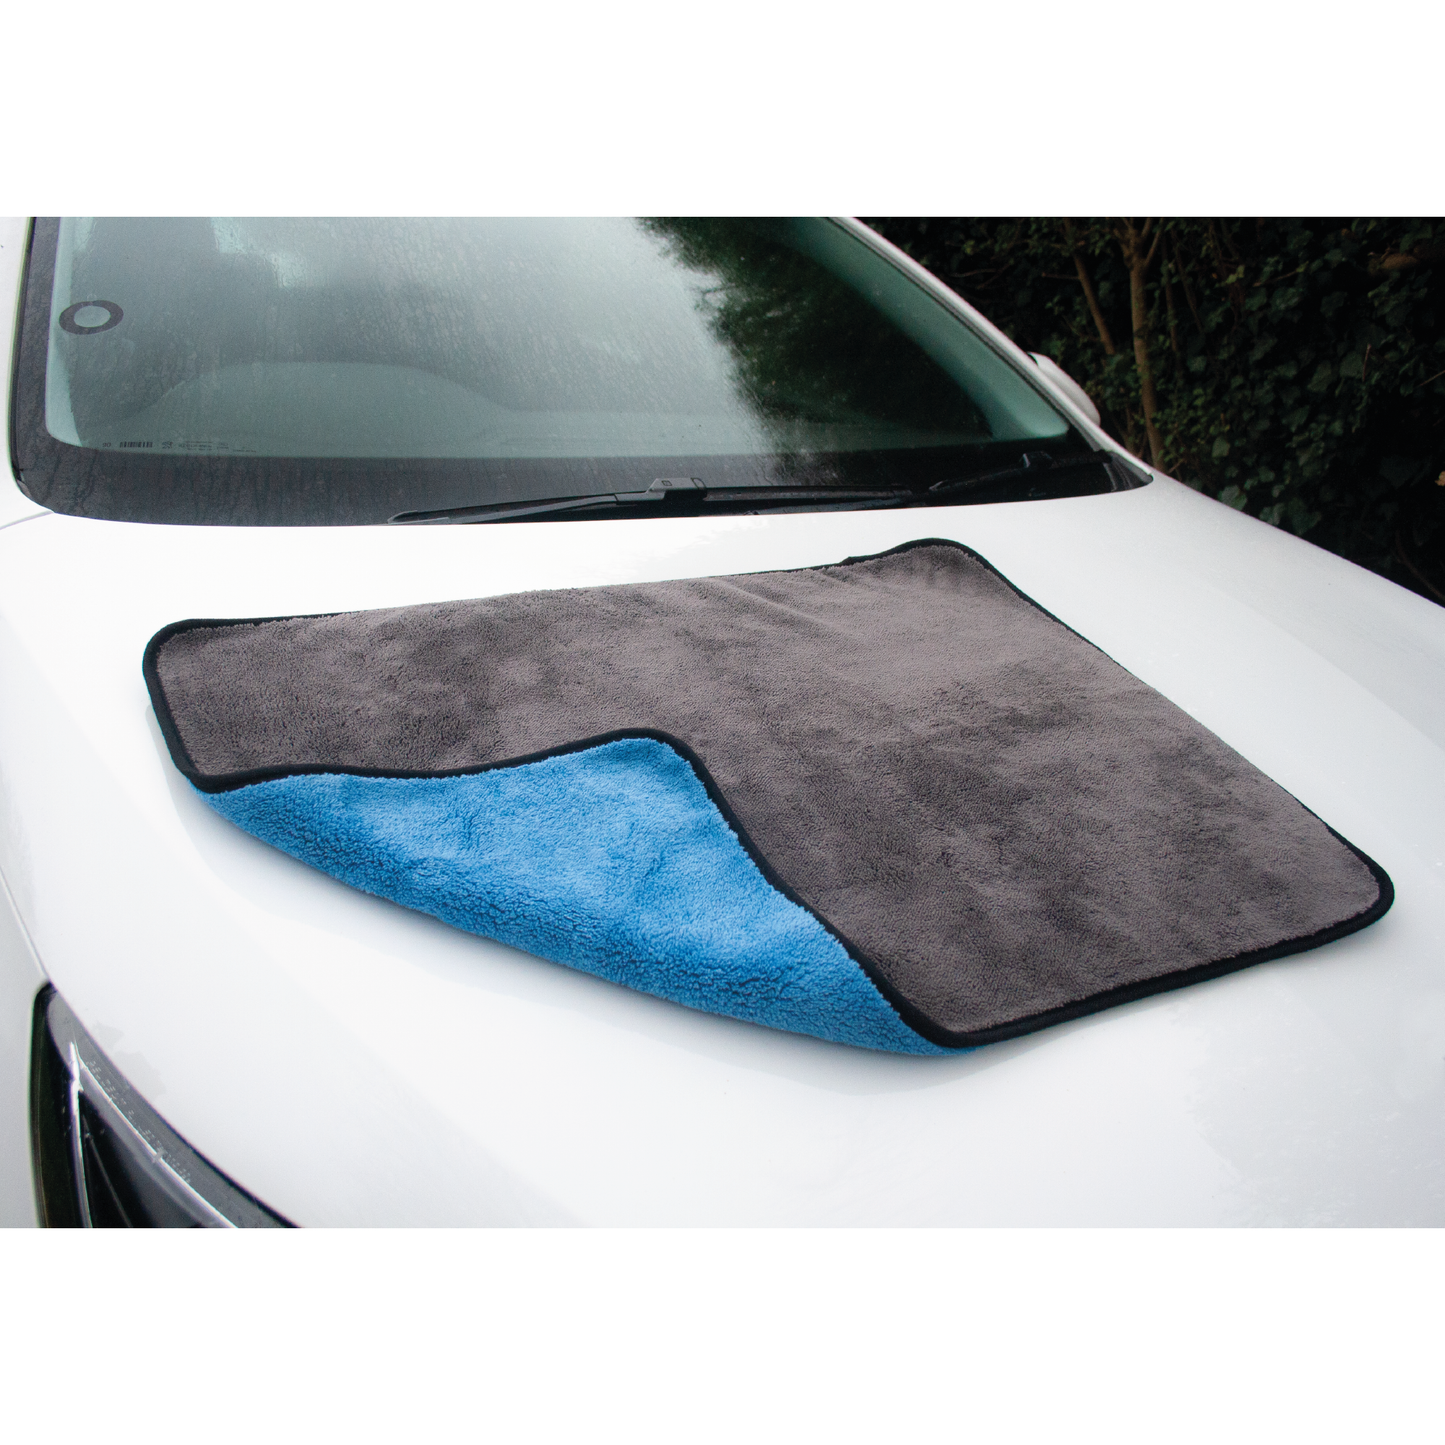 Premium XL 1000GSM Microfibre Car Drying Towel